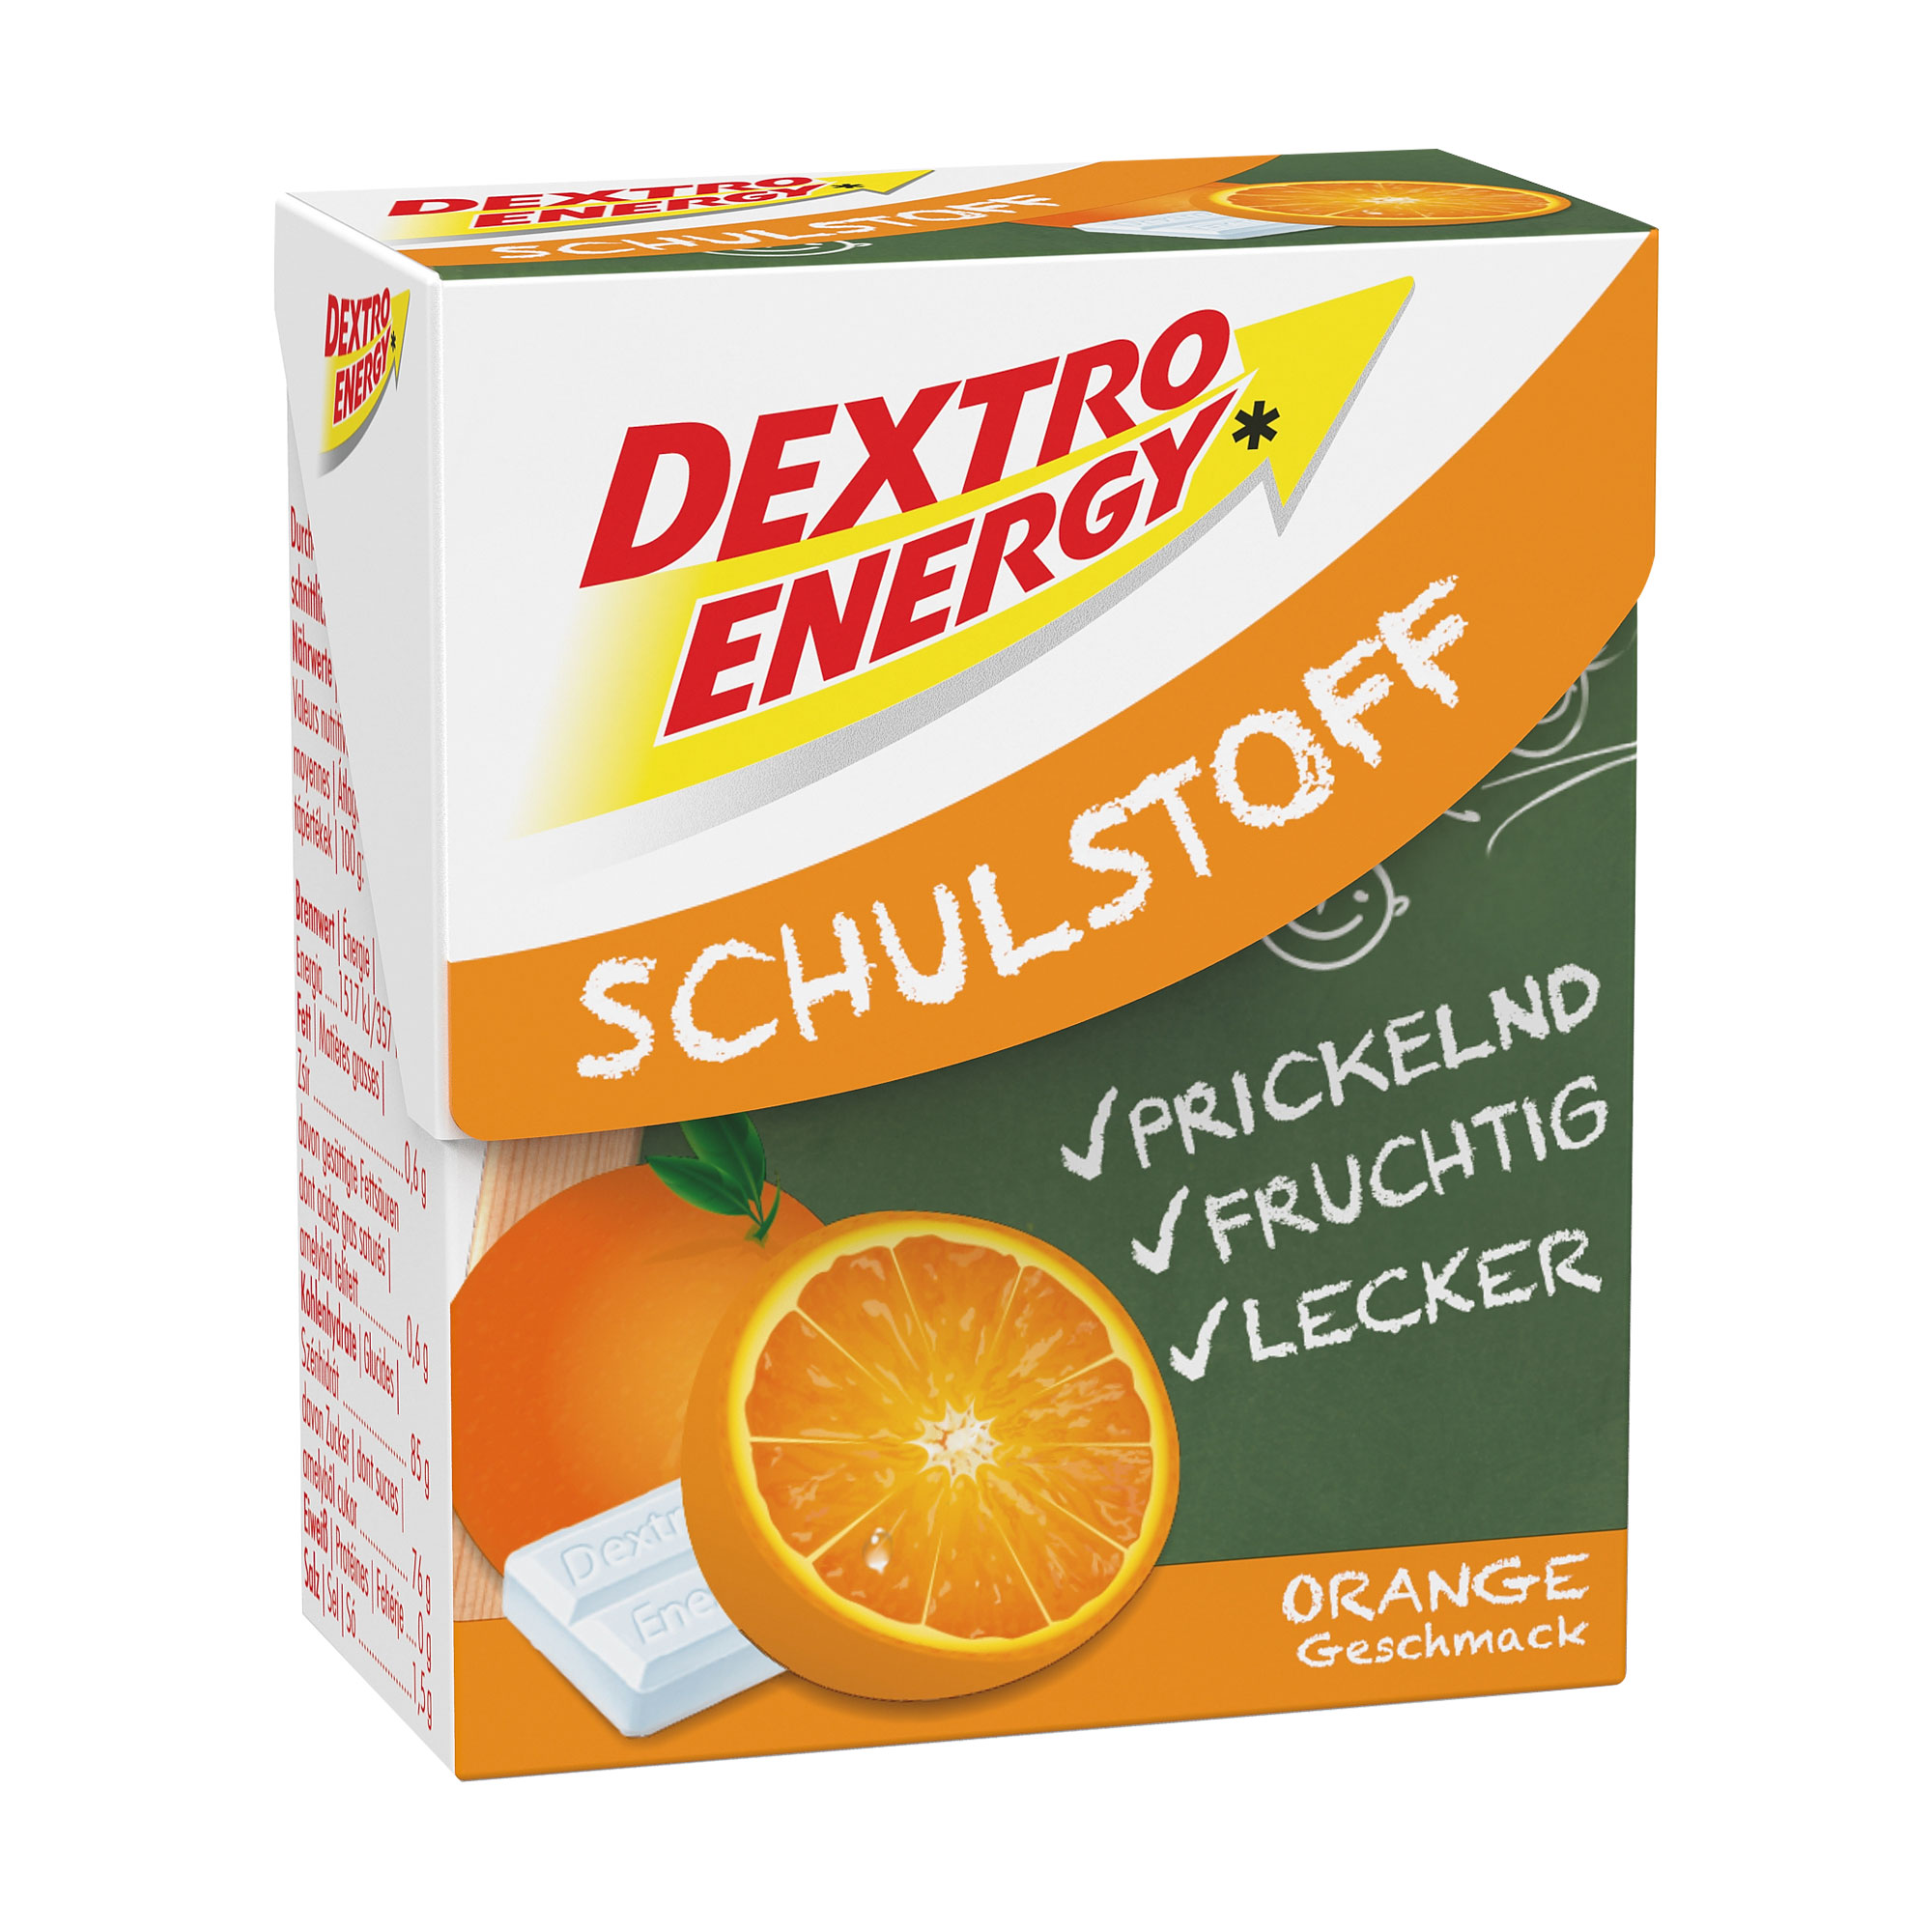 Dextrose in Form von kleinen Täfelchen. Mit frischem Orangengeschmack und witzigem Prickeleffekt.